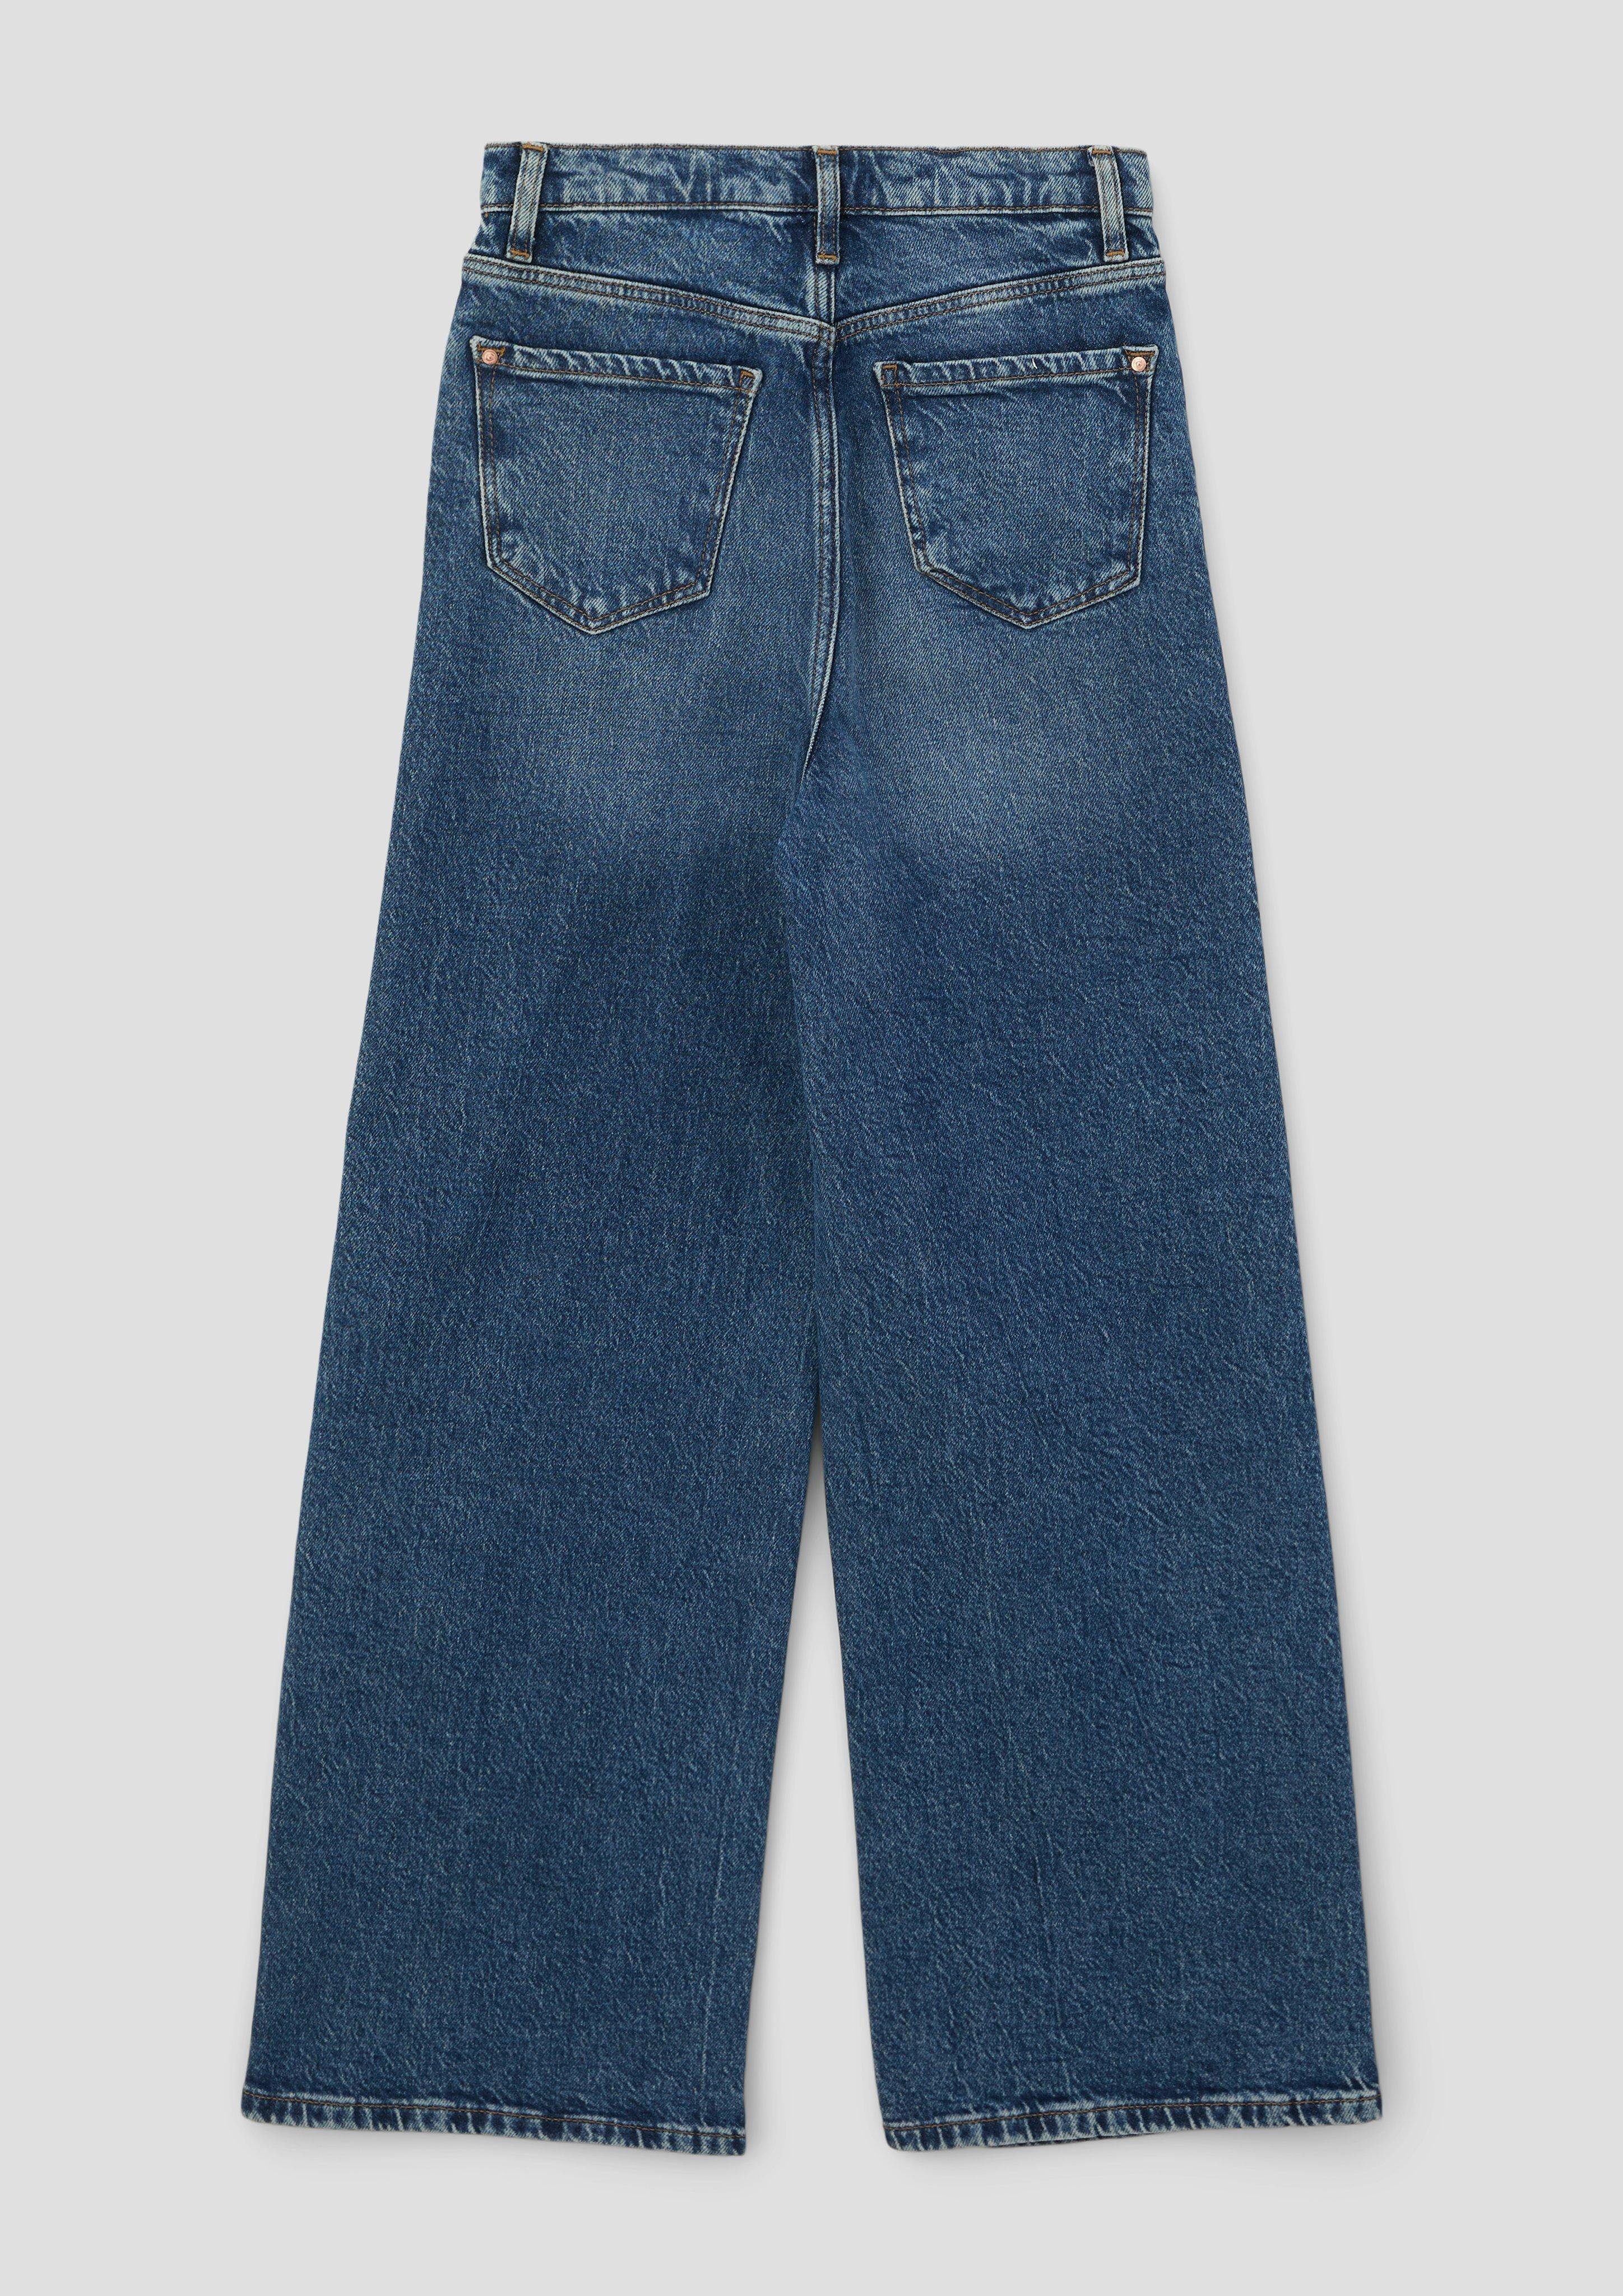 Rise Jeans Super / Fit Regular s.Oliver s.Oliver High Stoffhose Junior Leg / Wide / Waschung